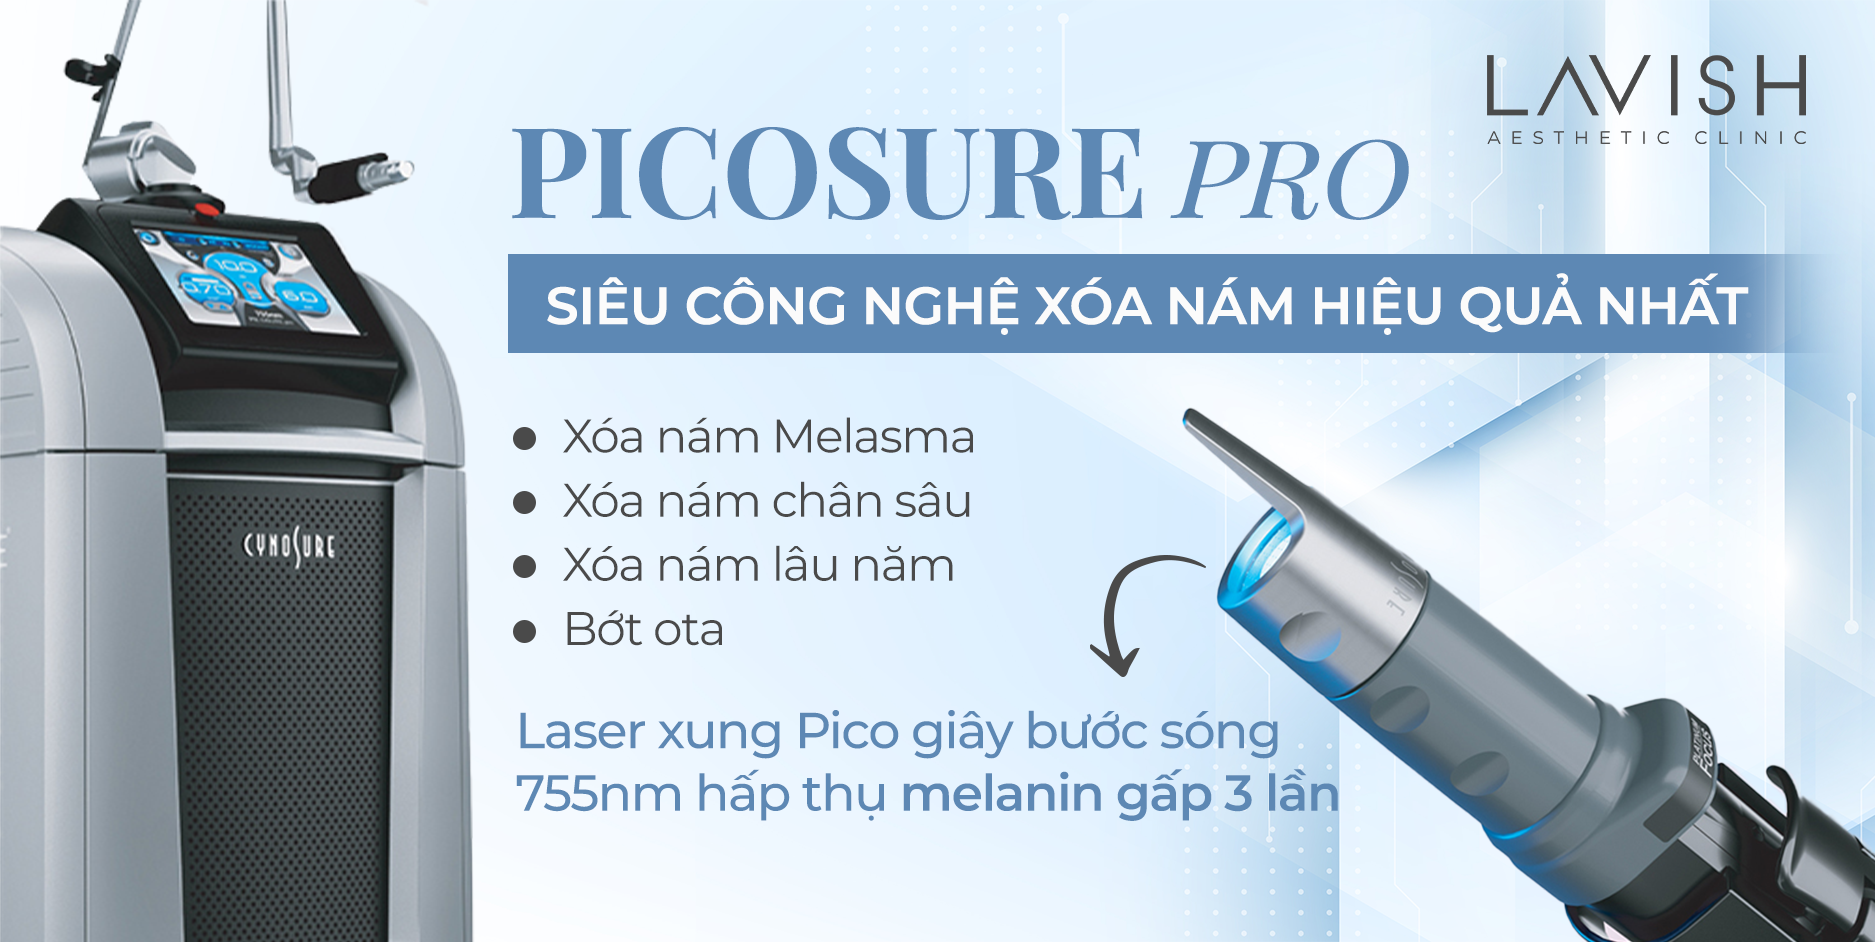 PicoSure Pro